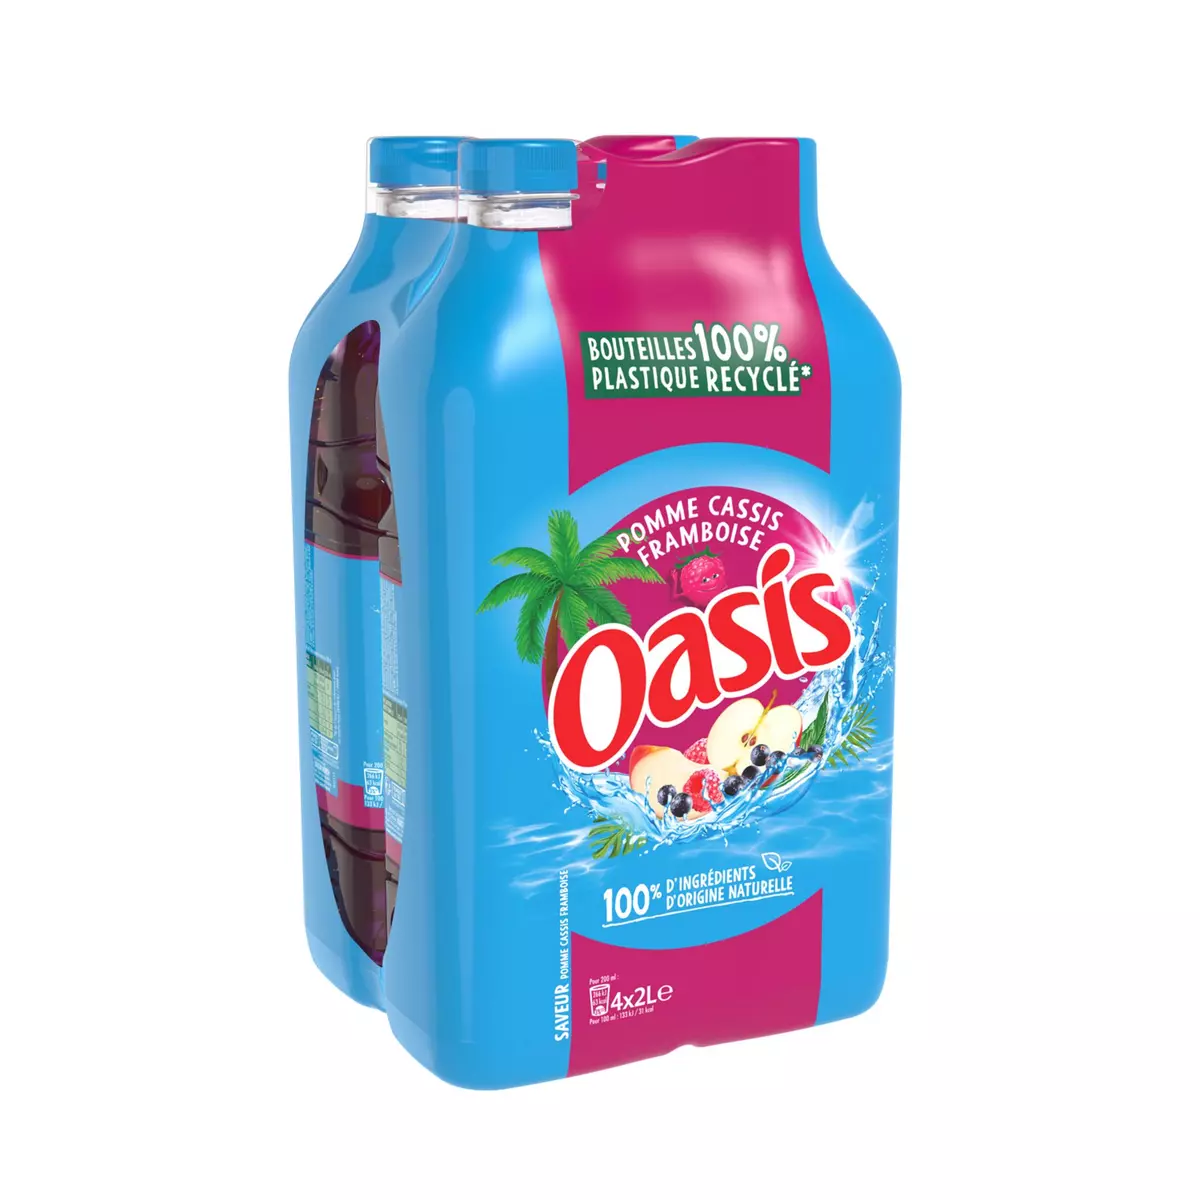 OASIS Boisson aux fruits Tropical bouteilles mini 6x25cl pas cher 